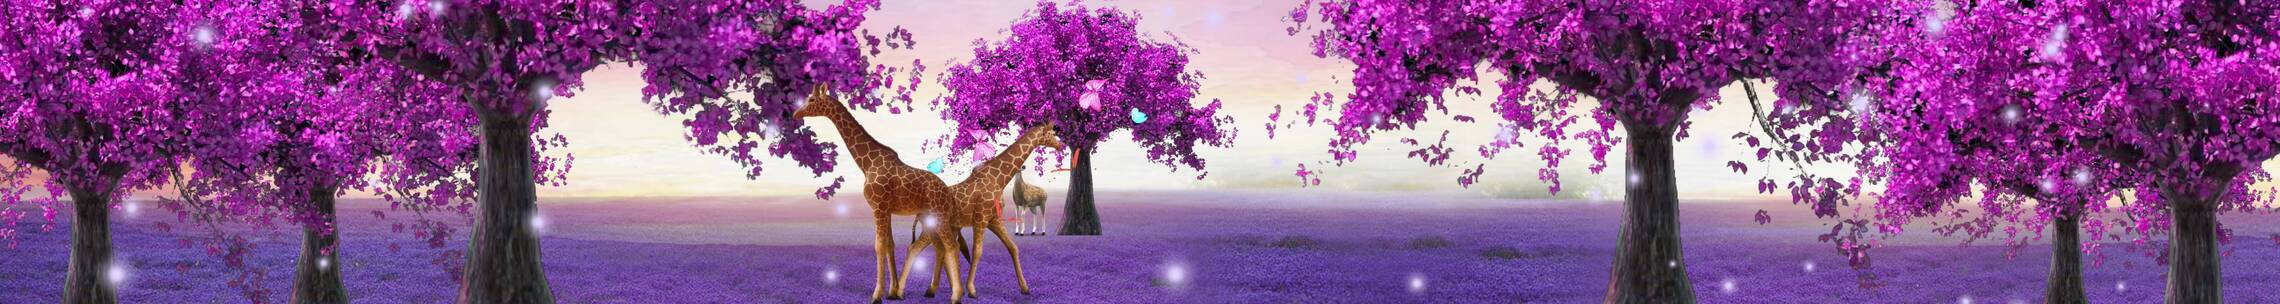 唯美紫色小鹿 紫色桃花树 森林梦幻